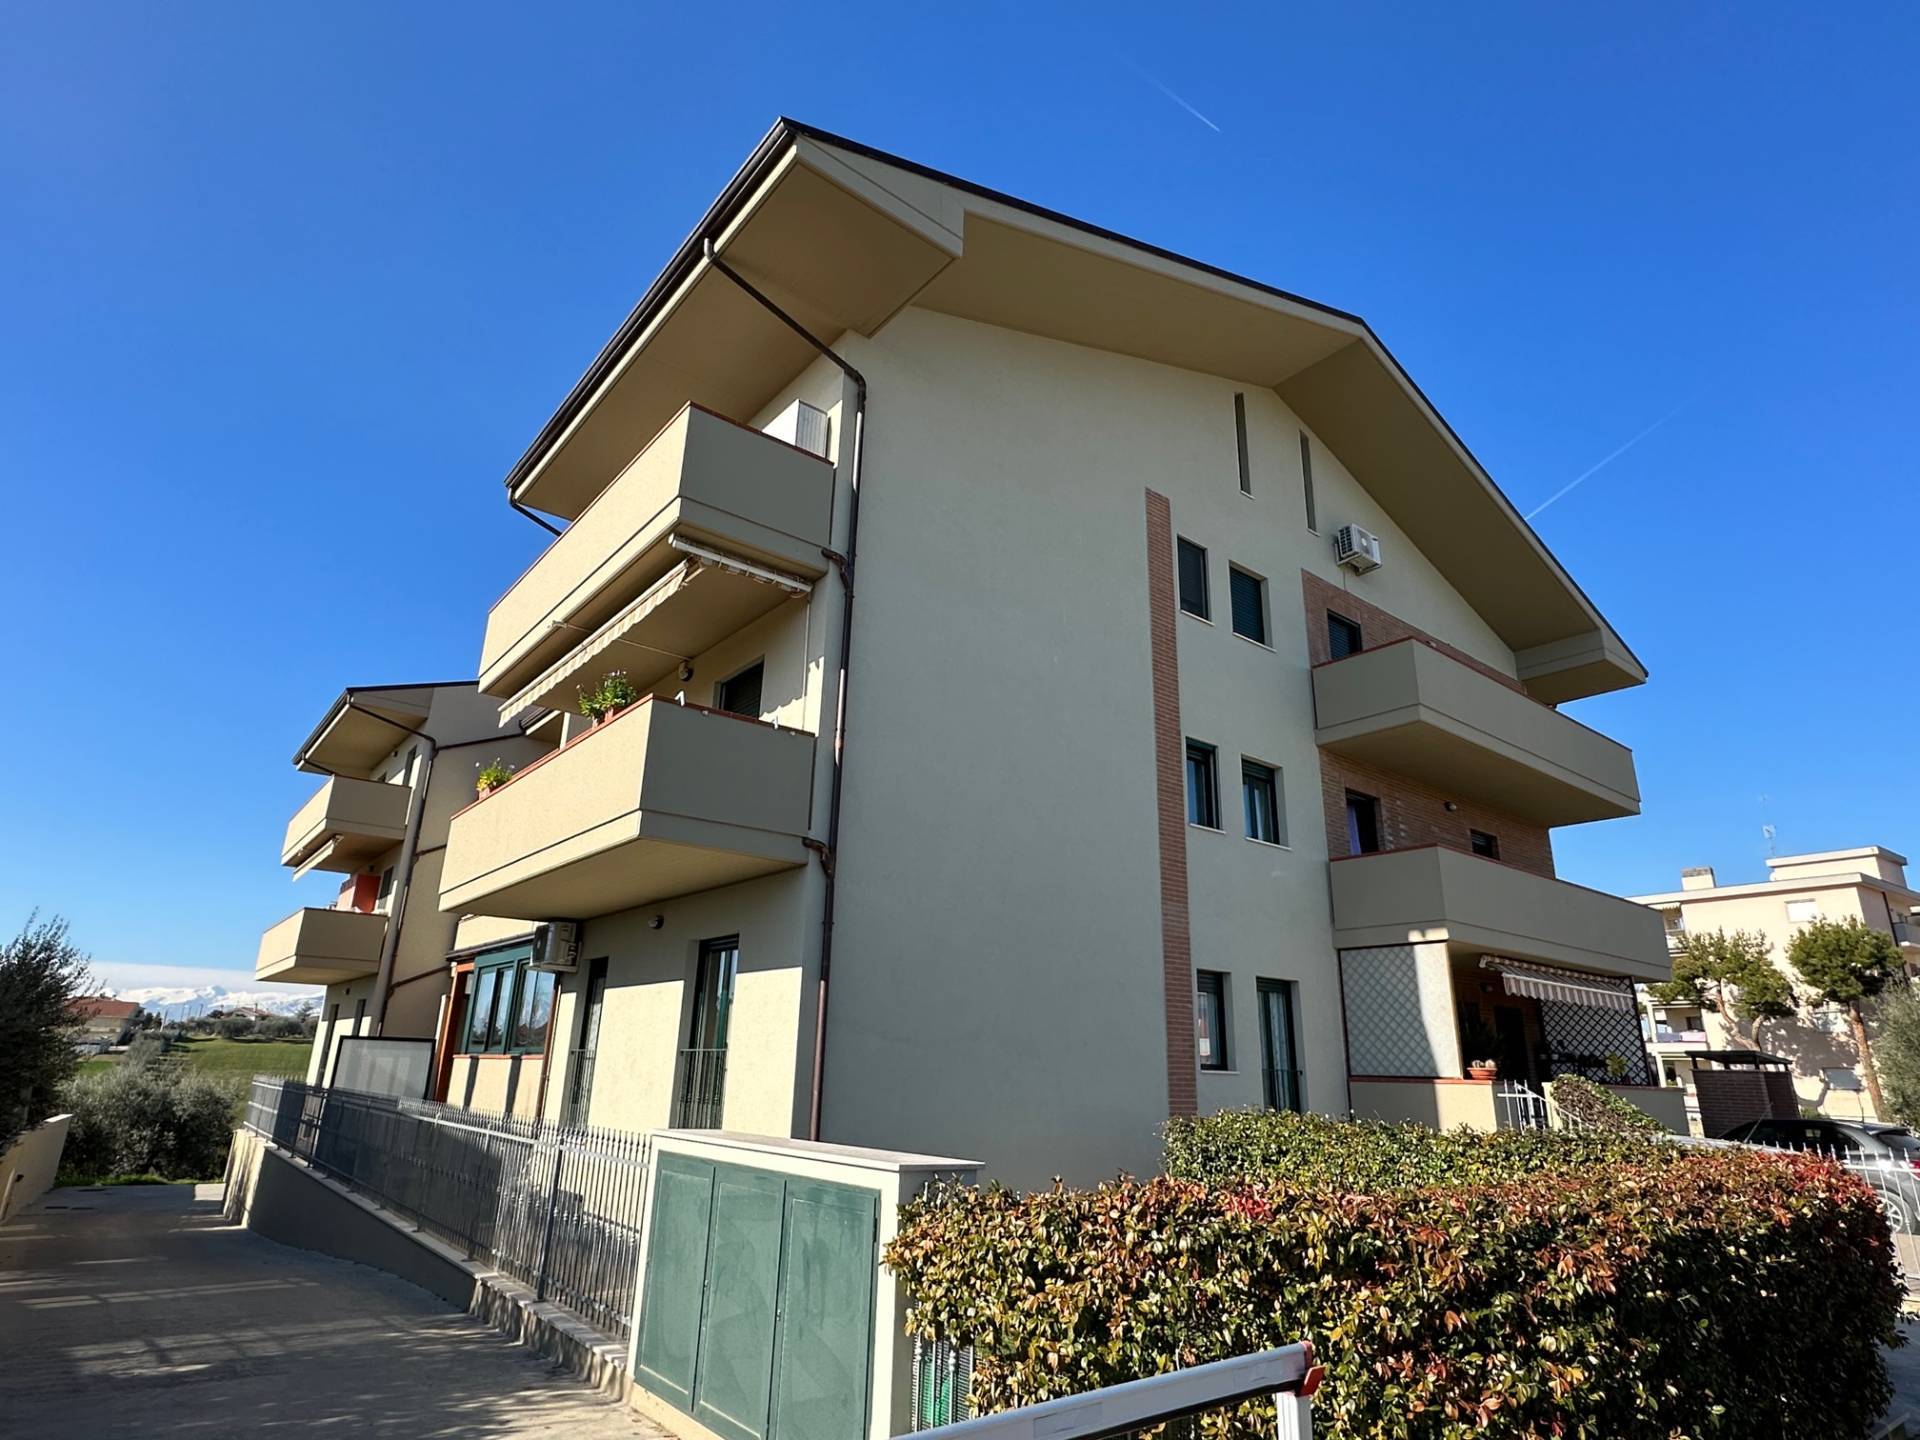 Appartamento in vendita a Mosciano Sant'Angelo, 5 locali, zona Località: SemiCentrale, prezzo € 103.000 | PortaleAgenzieImmobiliari.it